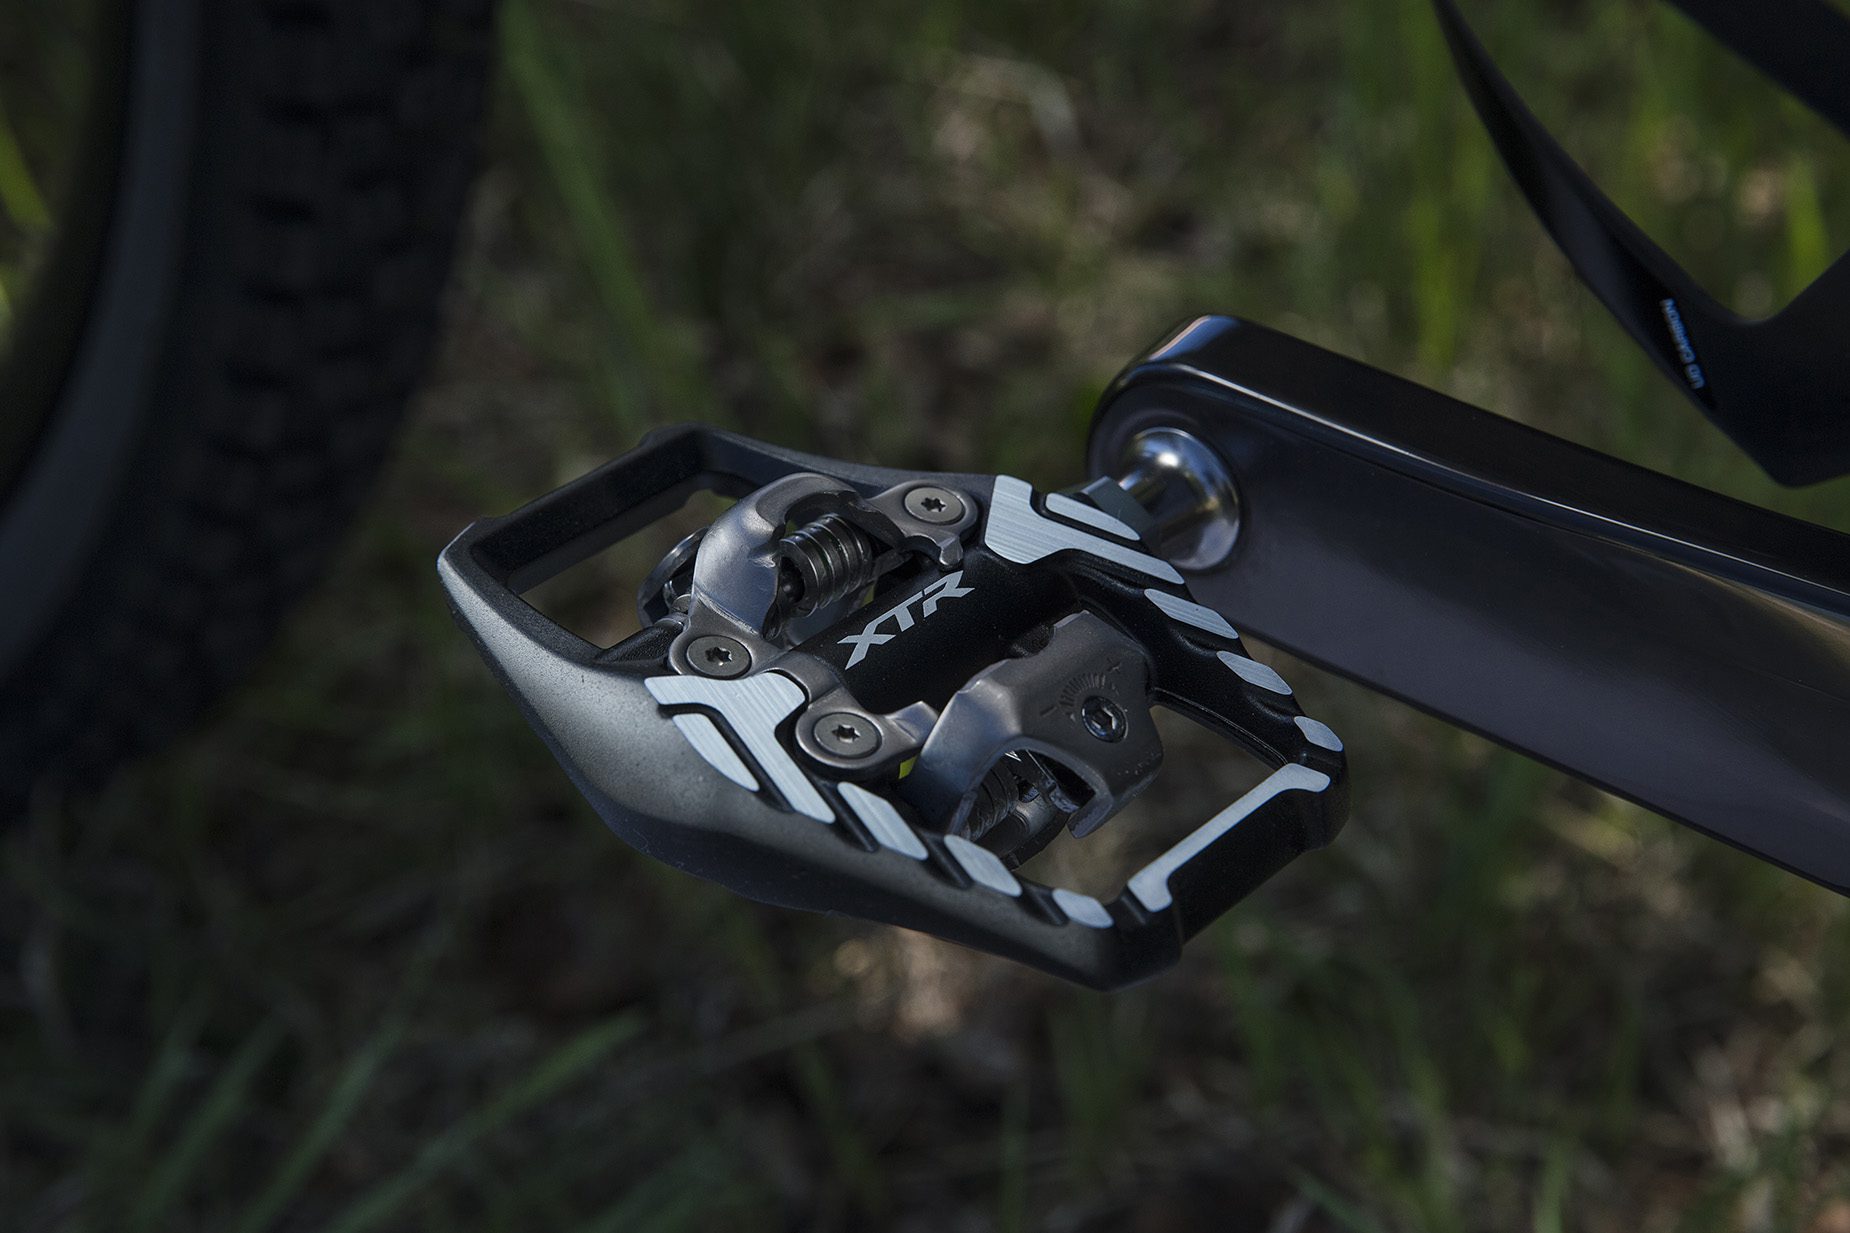 Shimano XTR M9100 trail pedal